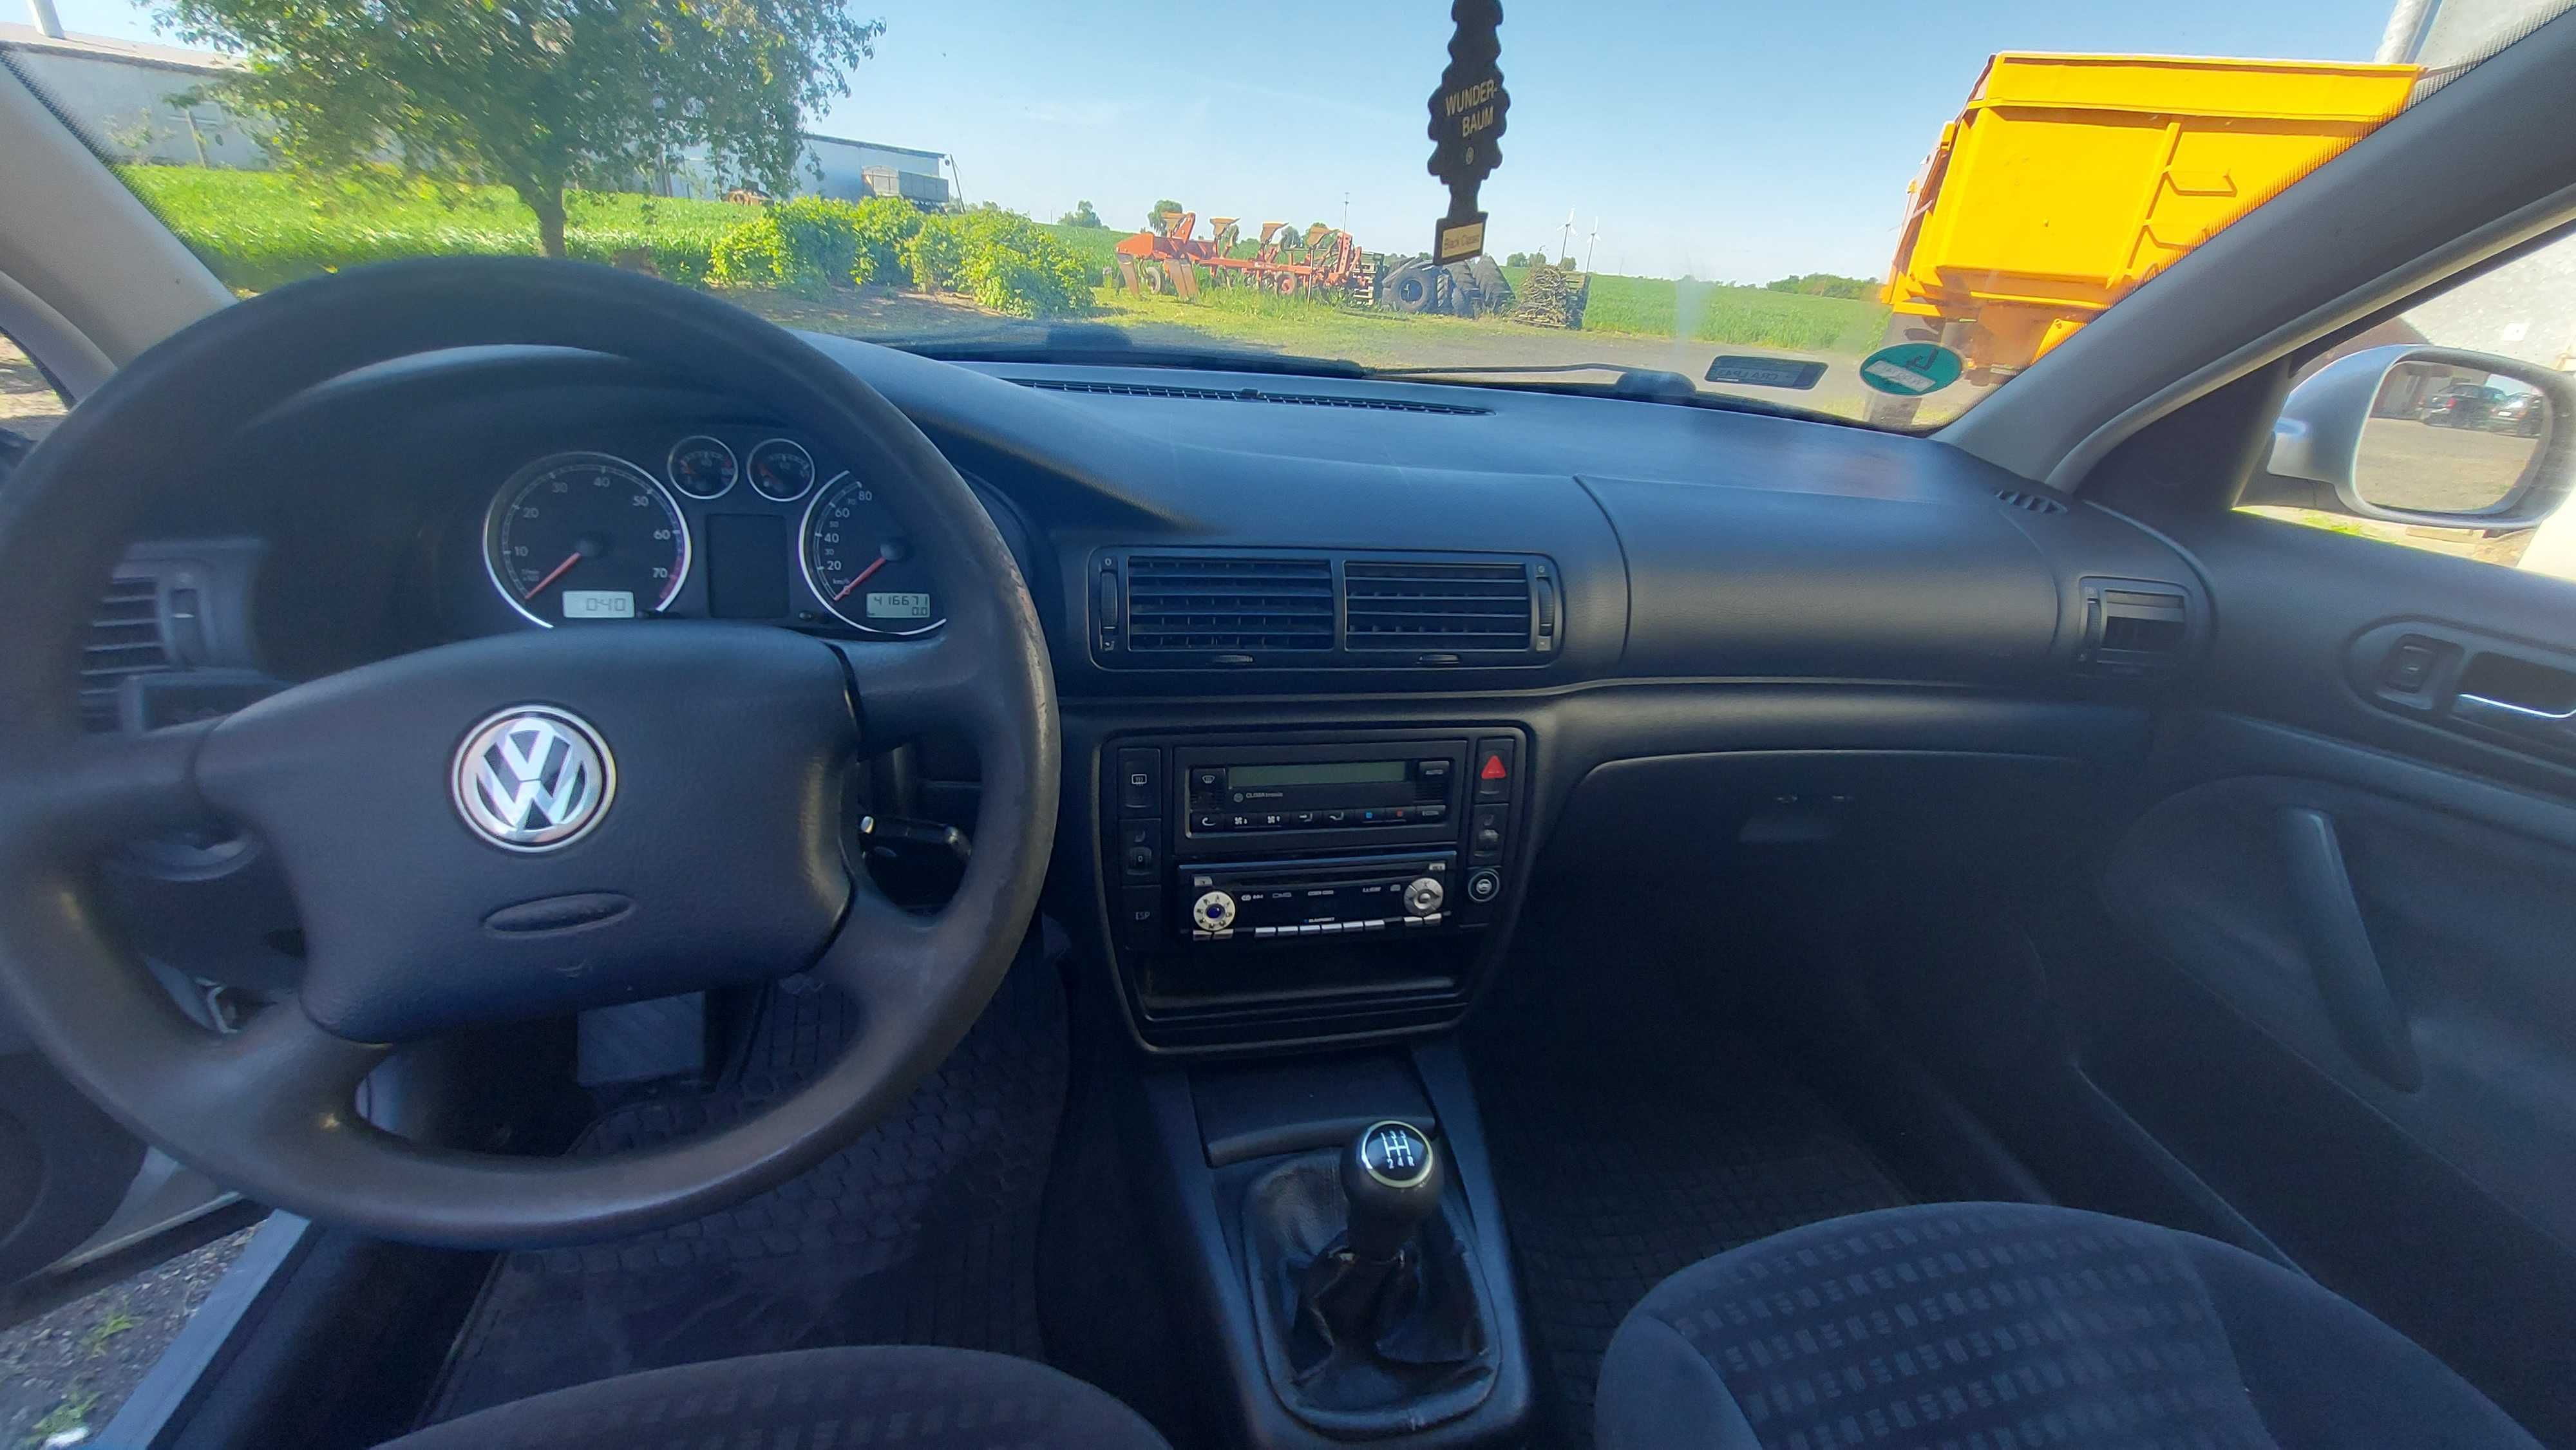 Sprzedam VW Passat b5, 2.0, benzyna + LPG, klimatronik